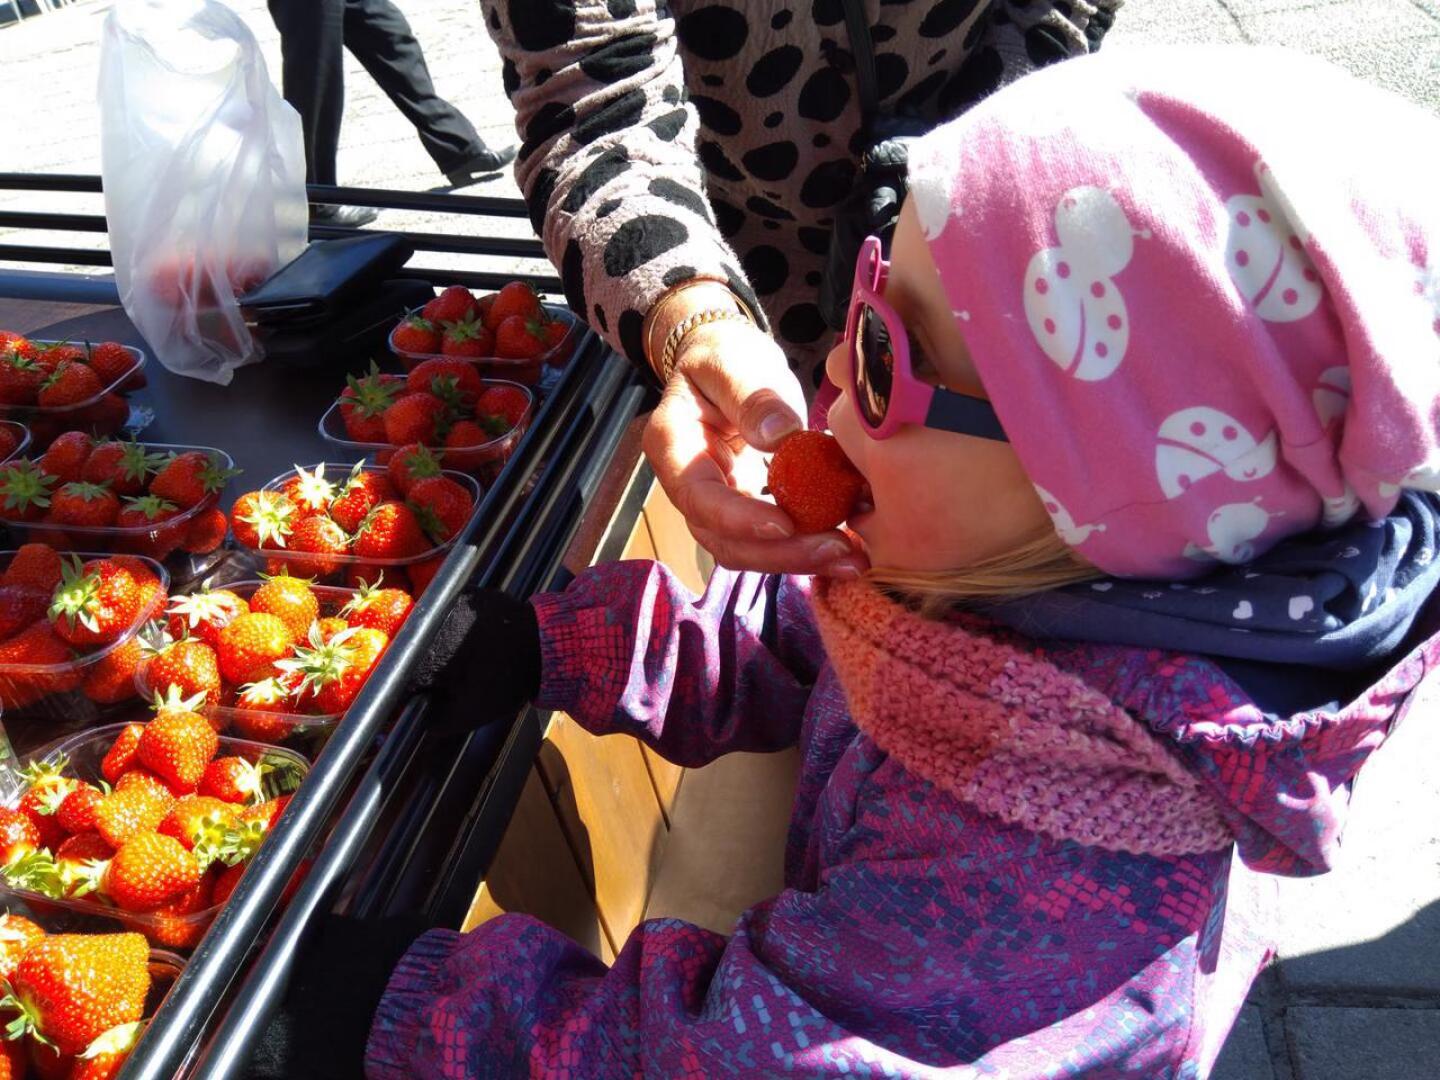 Nuori neito Alina maistoi kesän ensimmäistä kotimaista mansikkaa.
